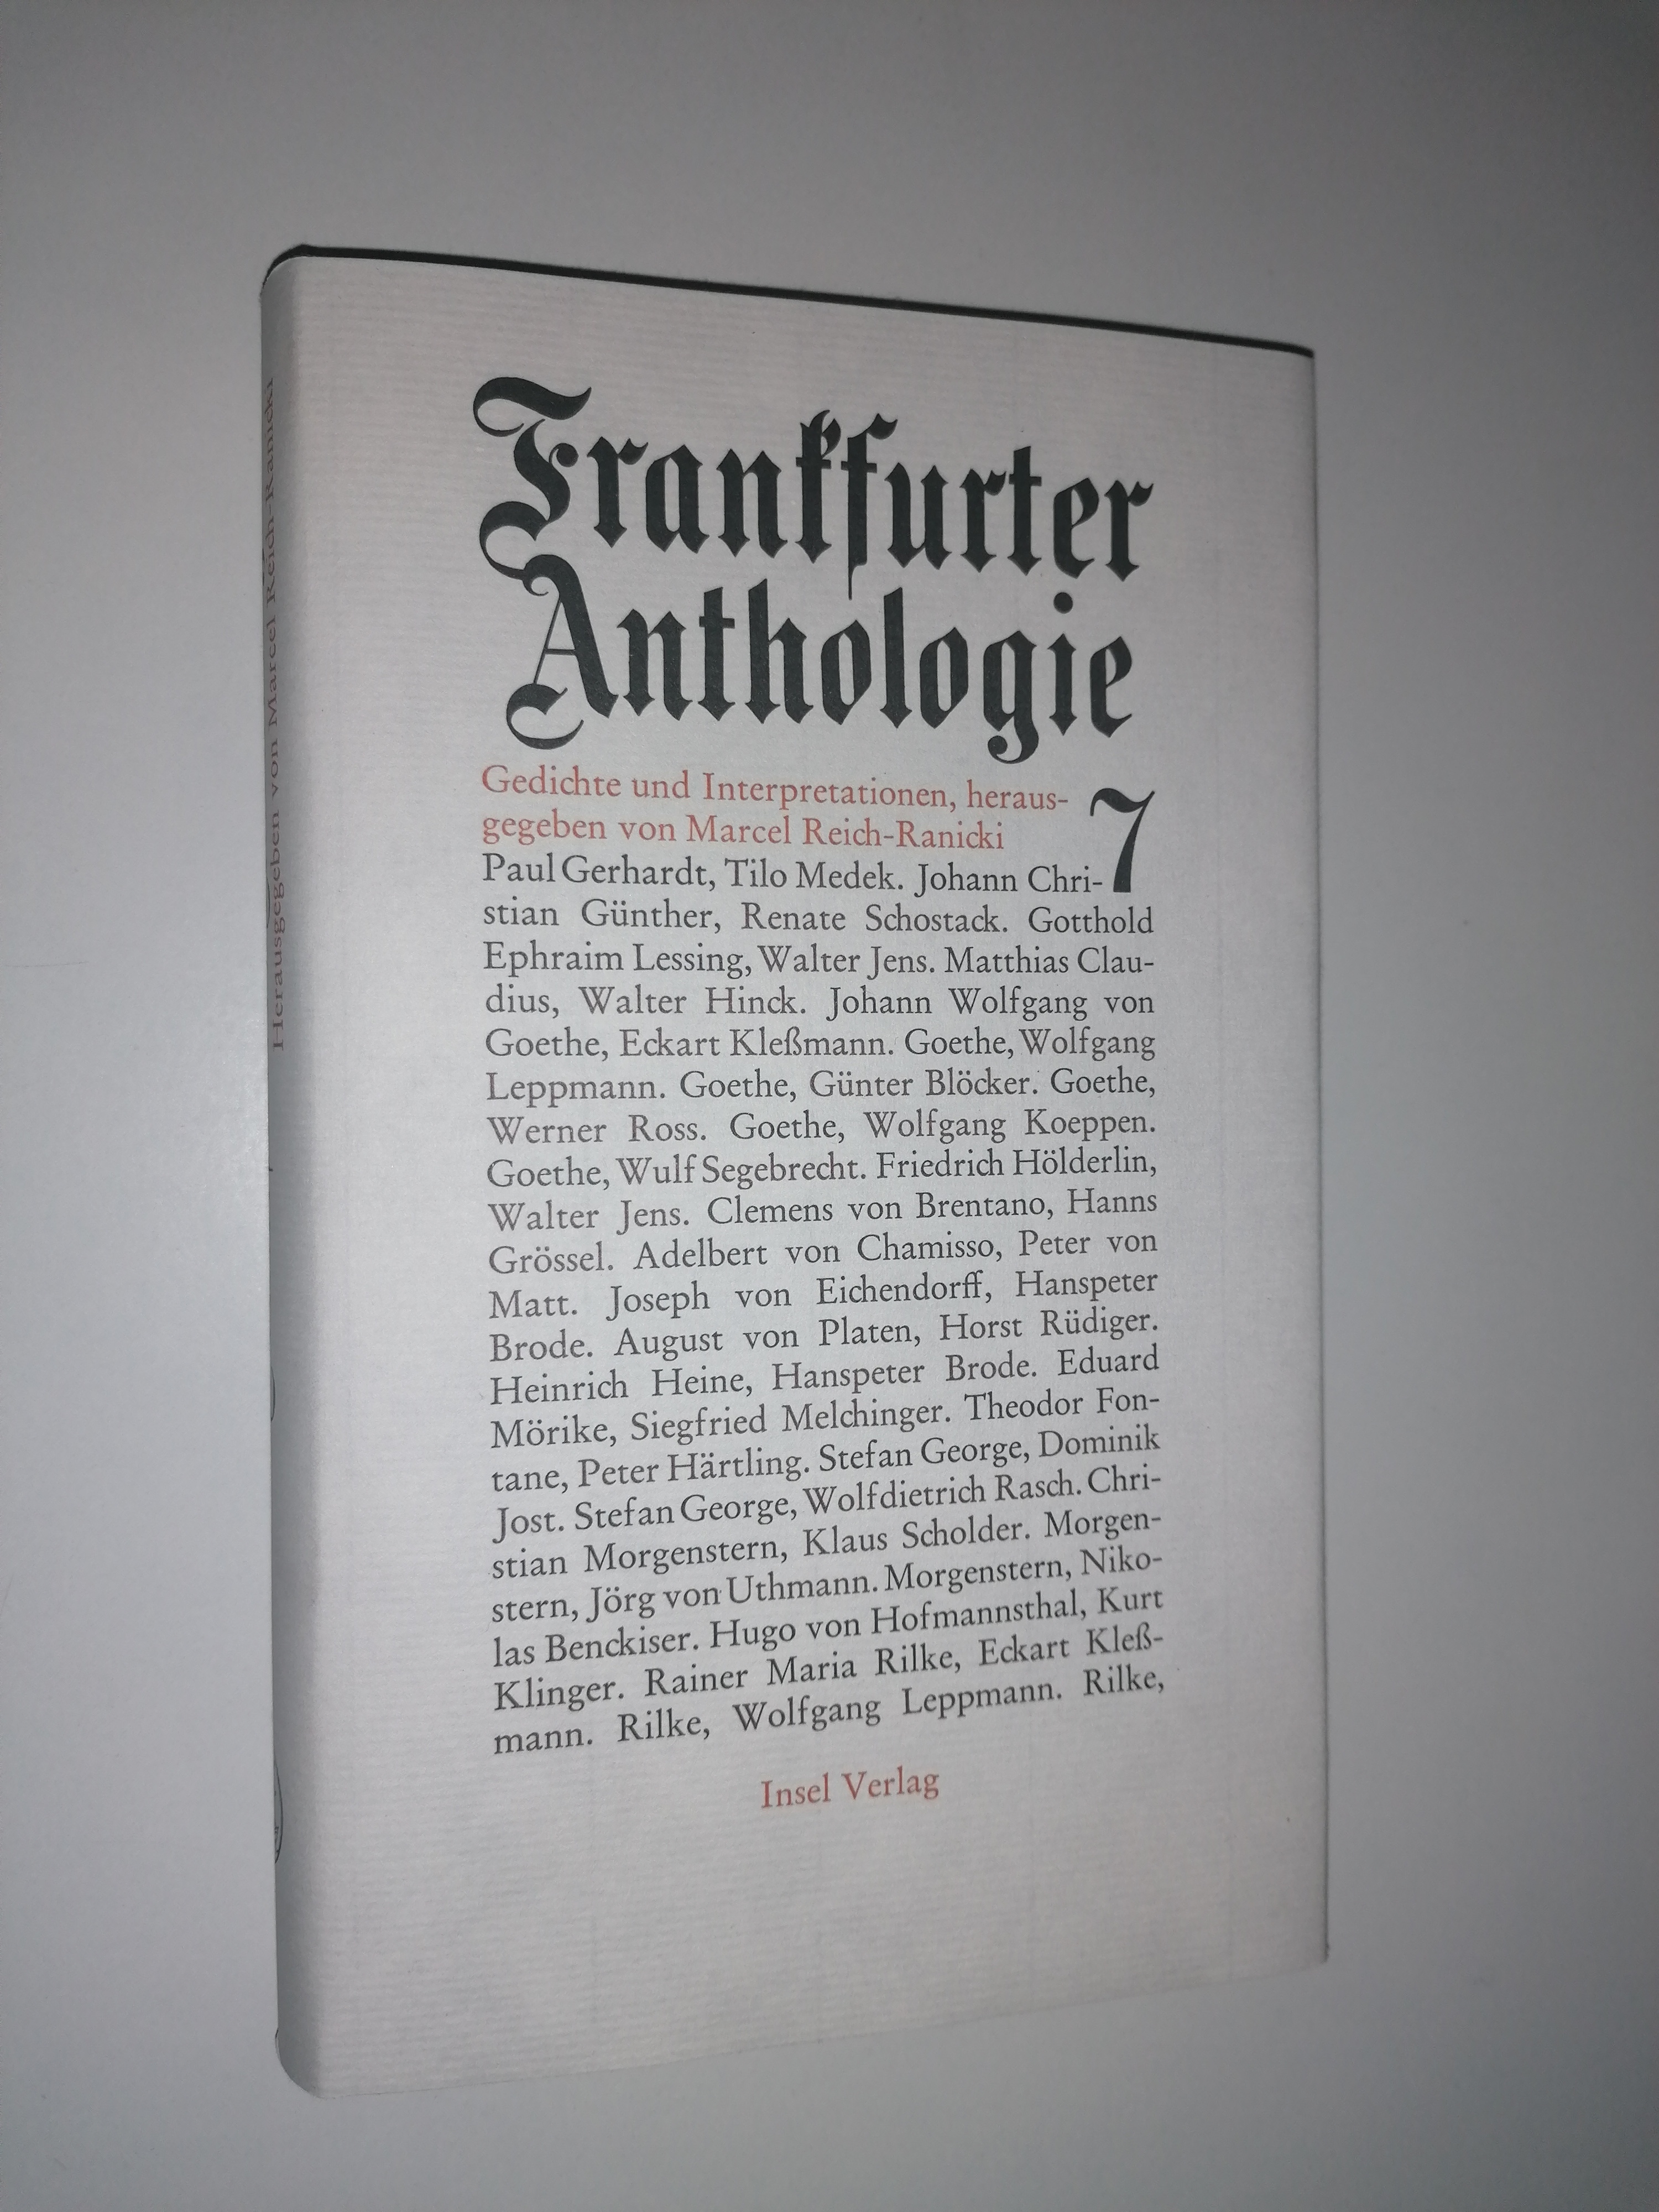 Frankfurter Anthologie. Siebenter Band. Gedichte und Interpretationen. - REICH-RANICKI, Marcel (Hrsg.)